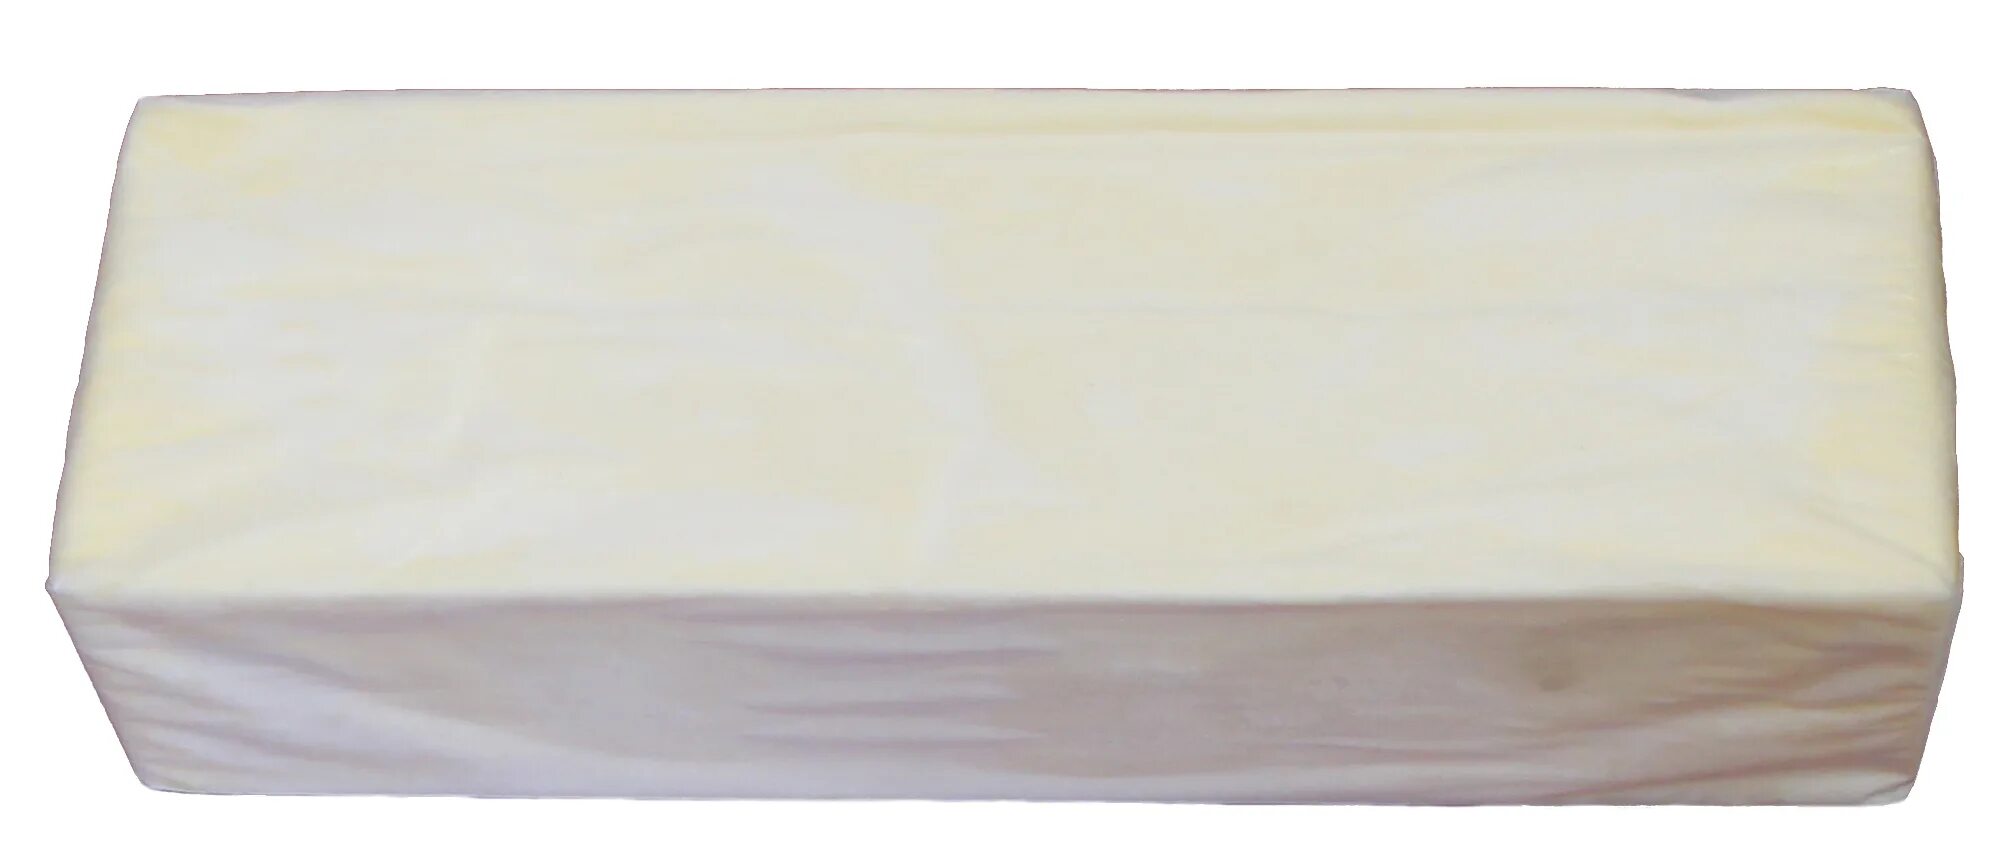 Масло Крестьянское сладкосливочное 500 гр. Масло сливочное 82.5 весовое 20 кг. Масло Юкмп 180 г. Масло сливочное в пергаменте. Масло сливочное 500 гр